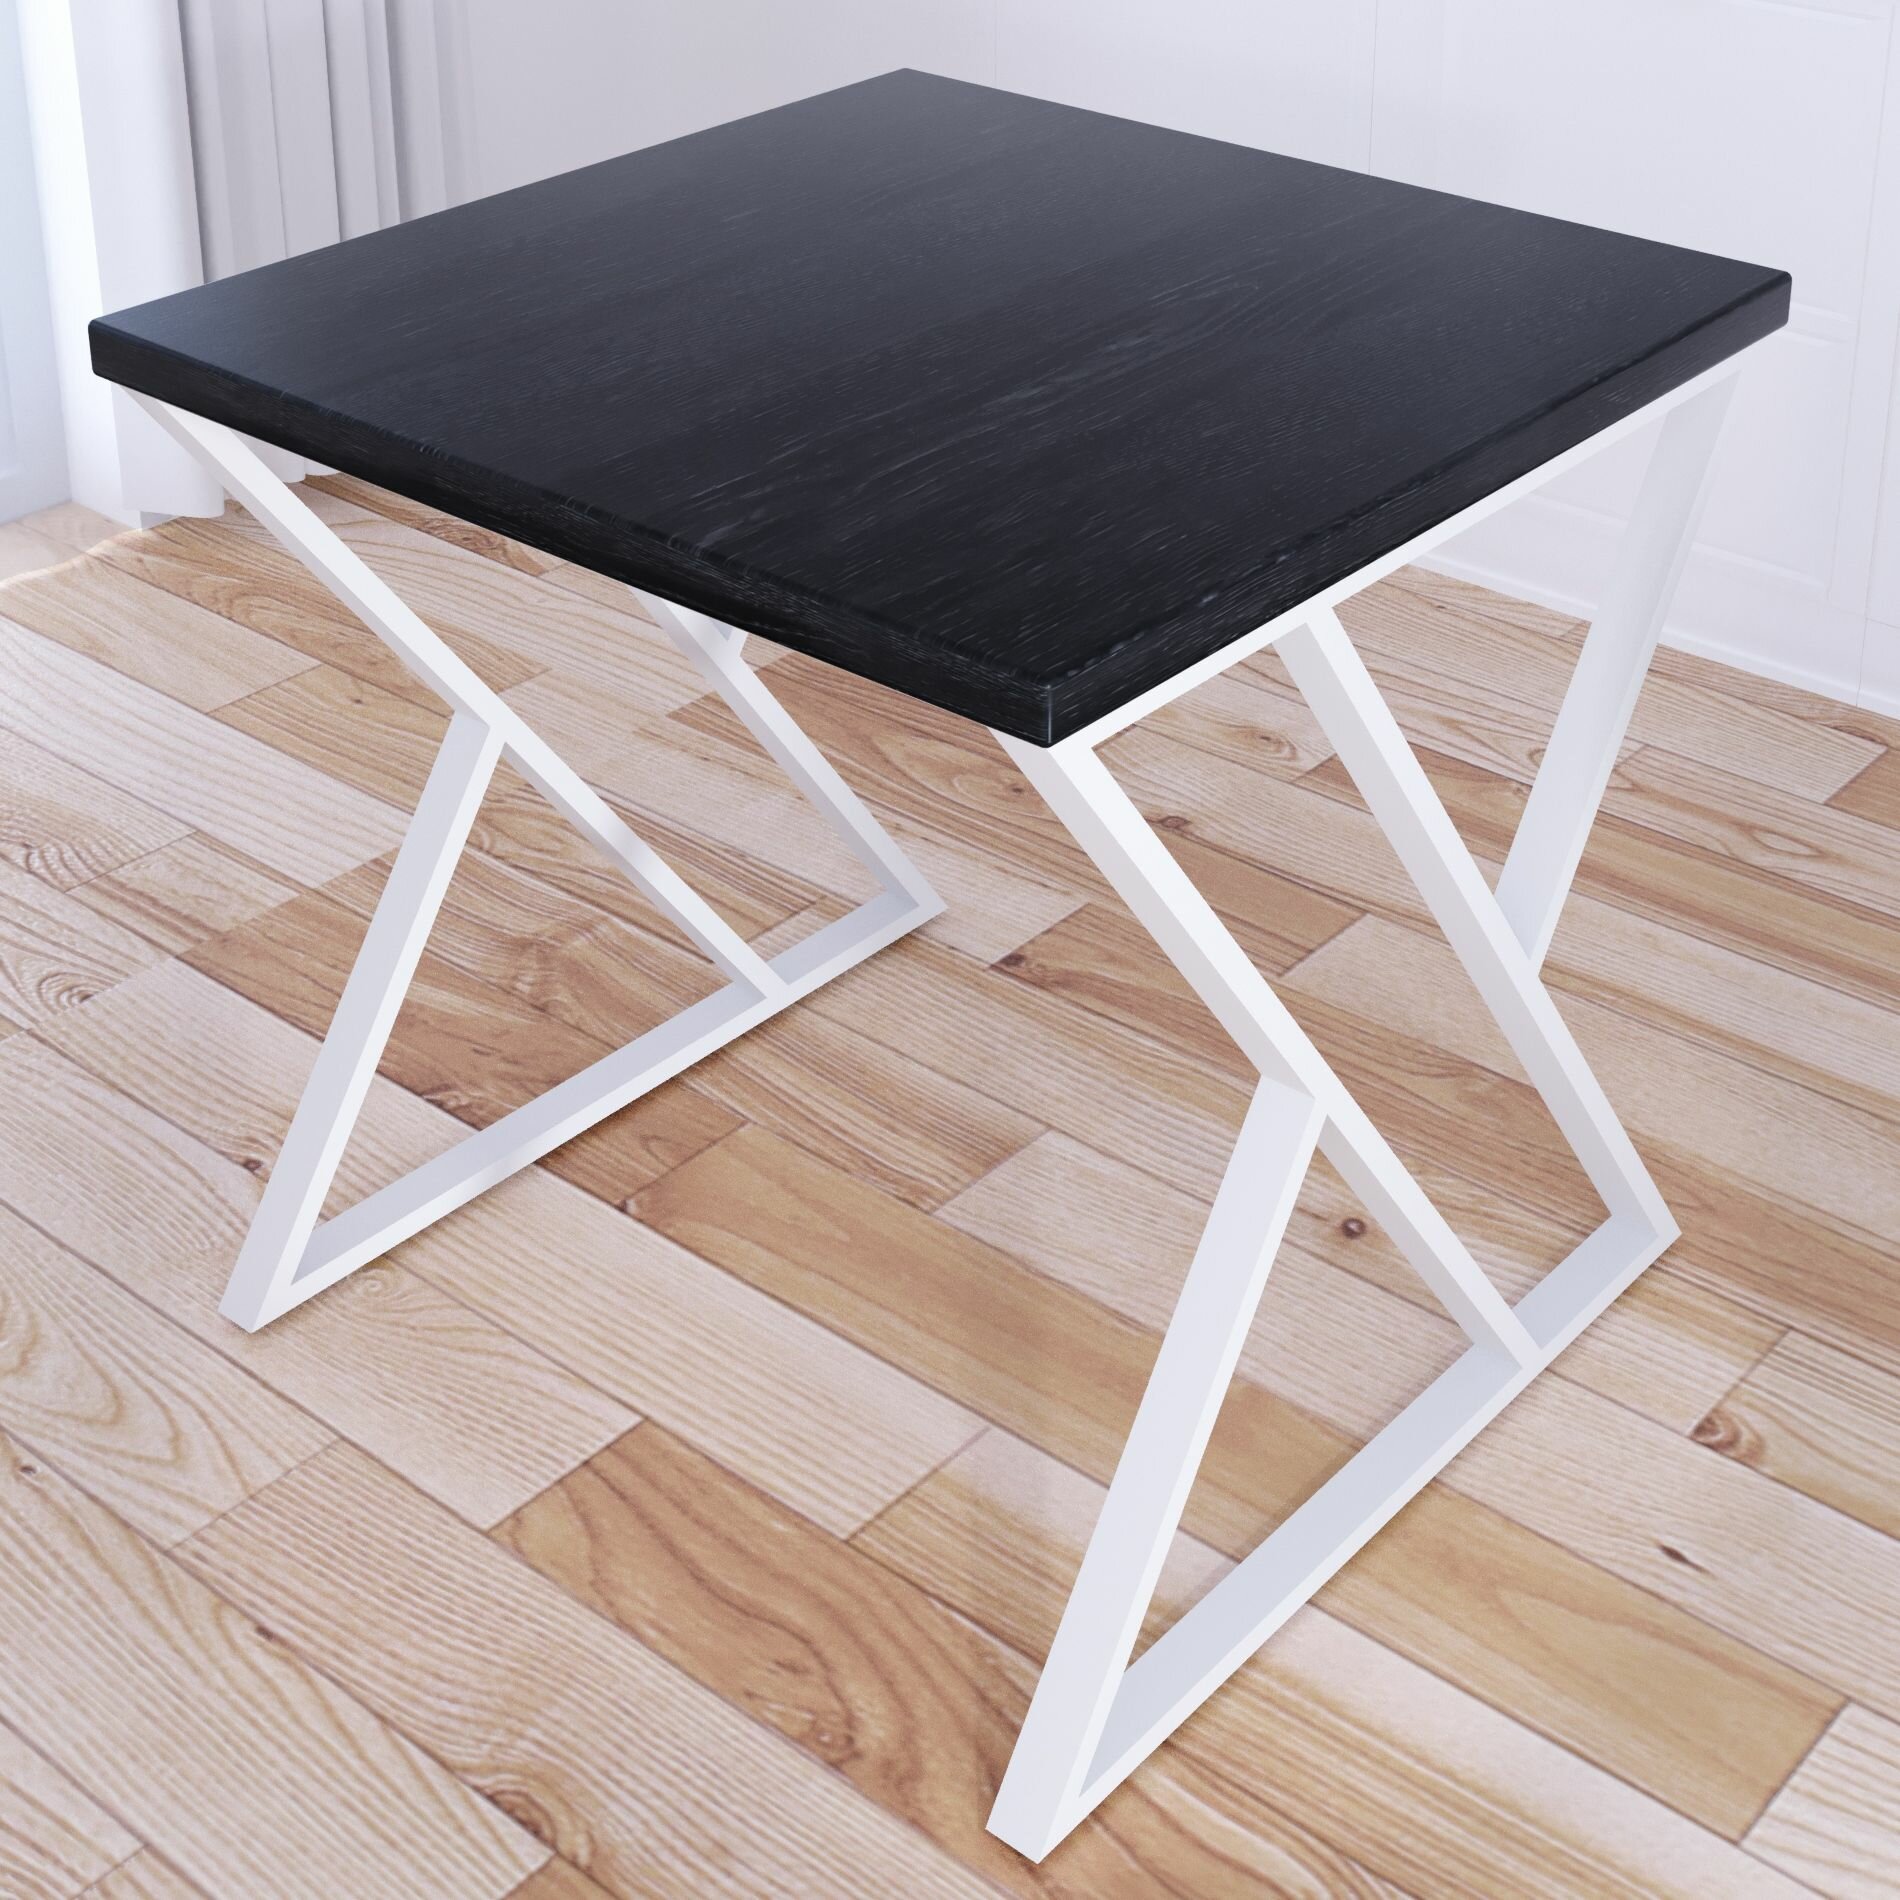 Стол кухонный Loft с квадратной столешницей цвета черного оникса из массива сосны 40 мм и белыми металлическими Z-образными ножками, 70x70х75 см